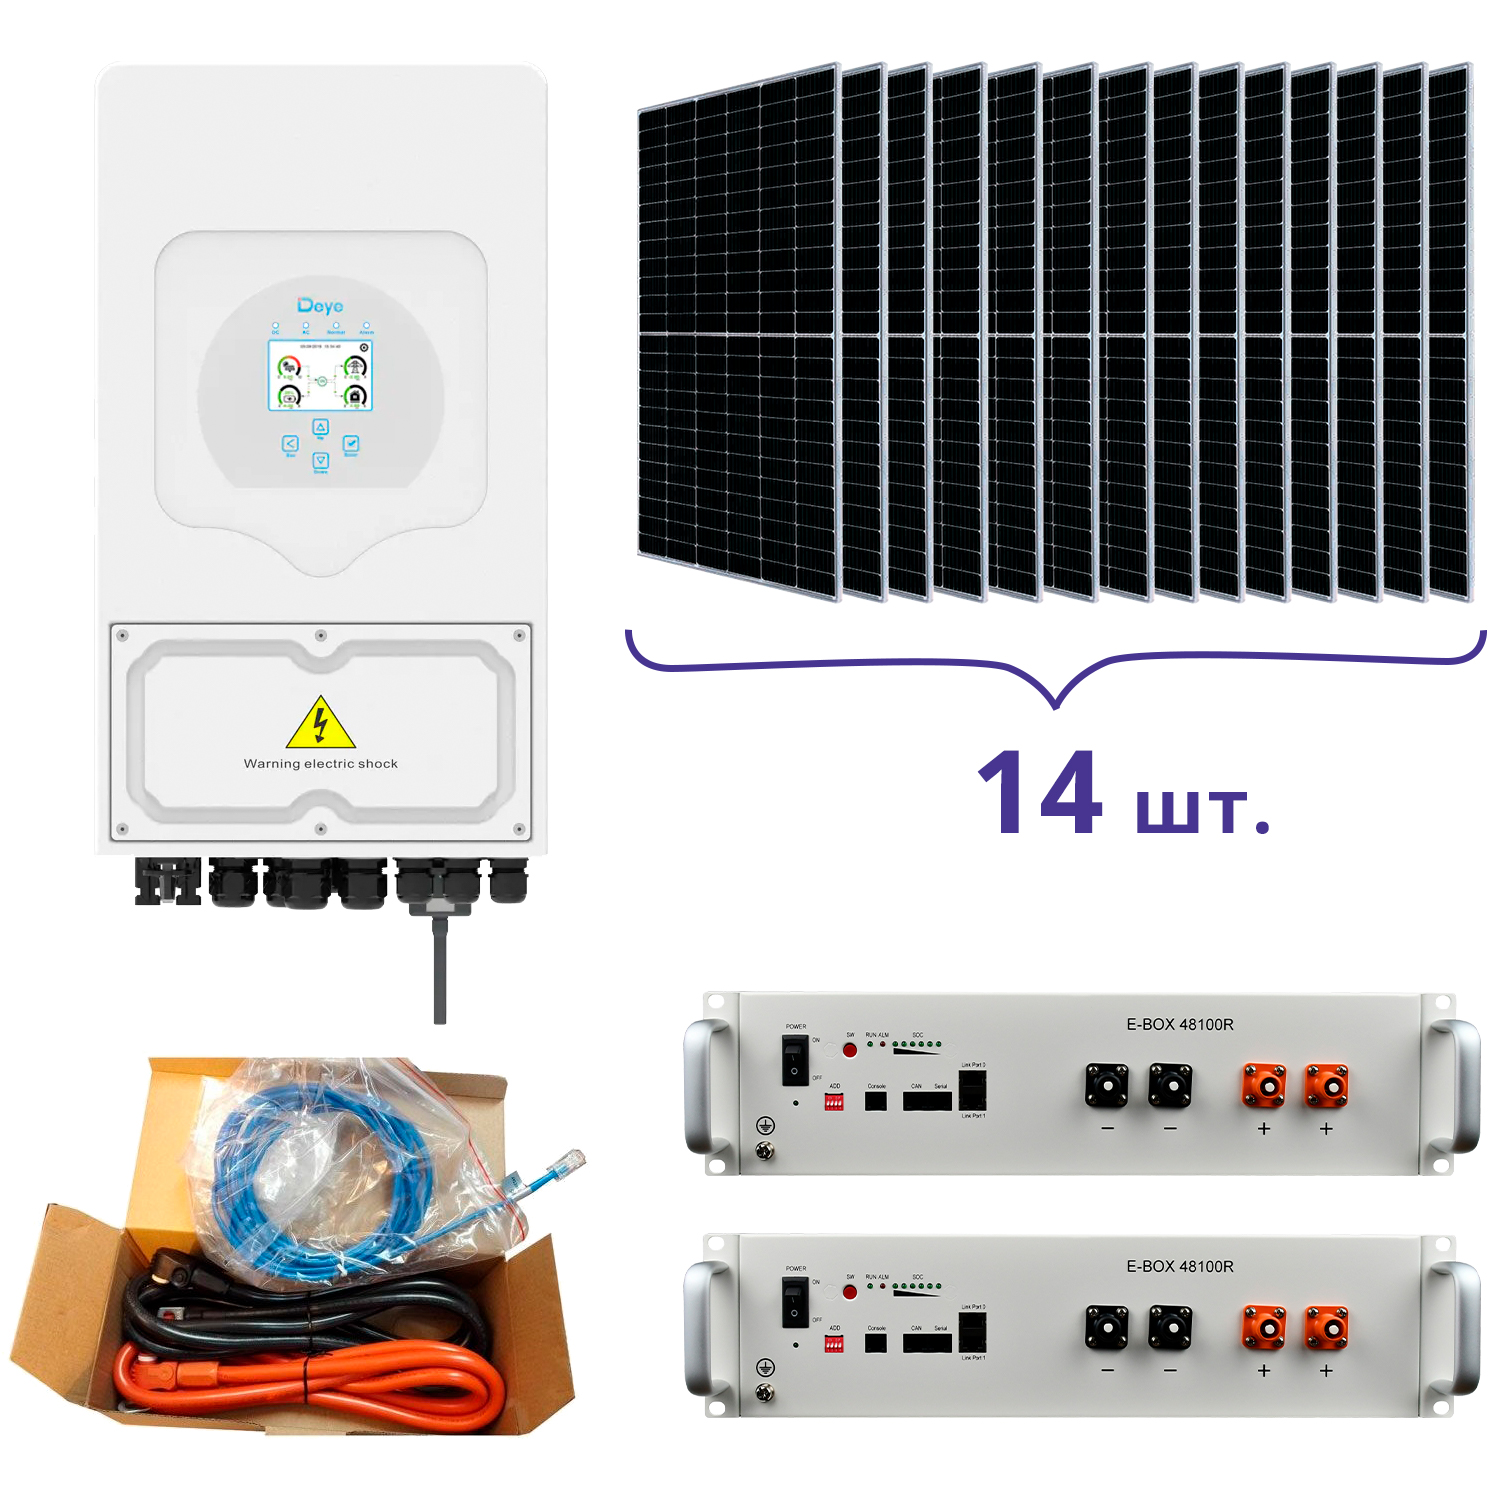 Отзывы система резервного питания для дома Deye SUN-5K-SG03LP1-EU+Pytes E-BOX-48100R-2шт.+Battery Cable Kit-1шт.+JA Solar JAM72S20-460/MR 460 Wp, Mono-14шт.+кабель в Украине